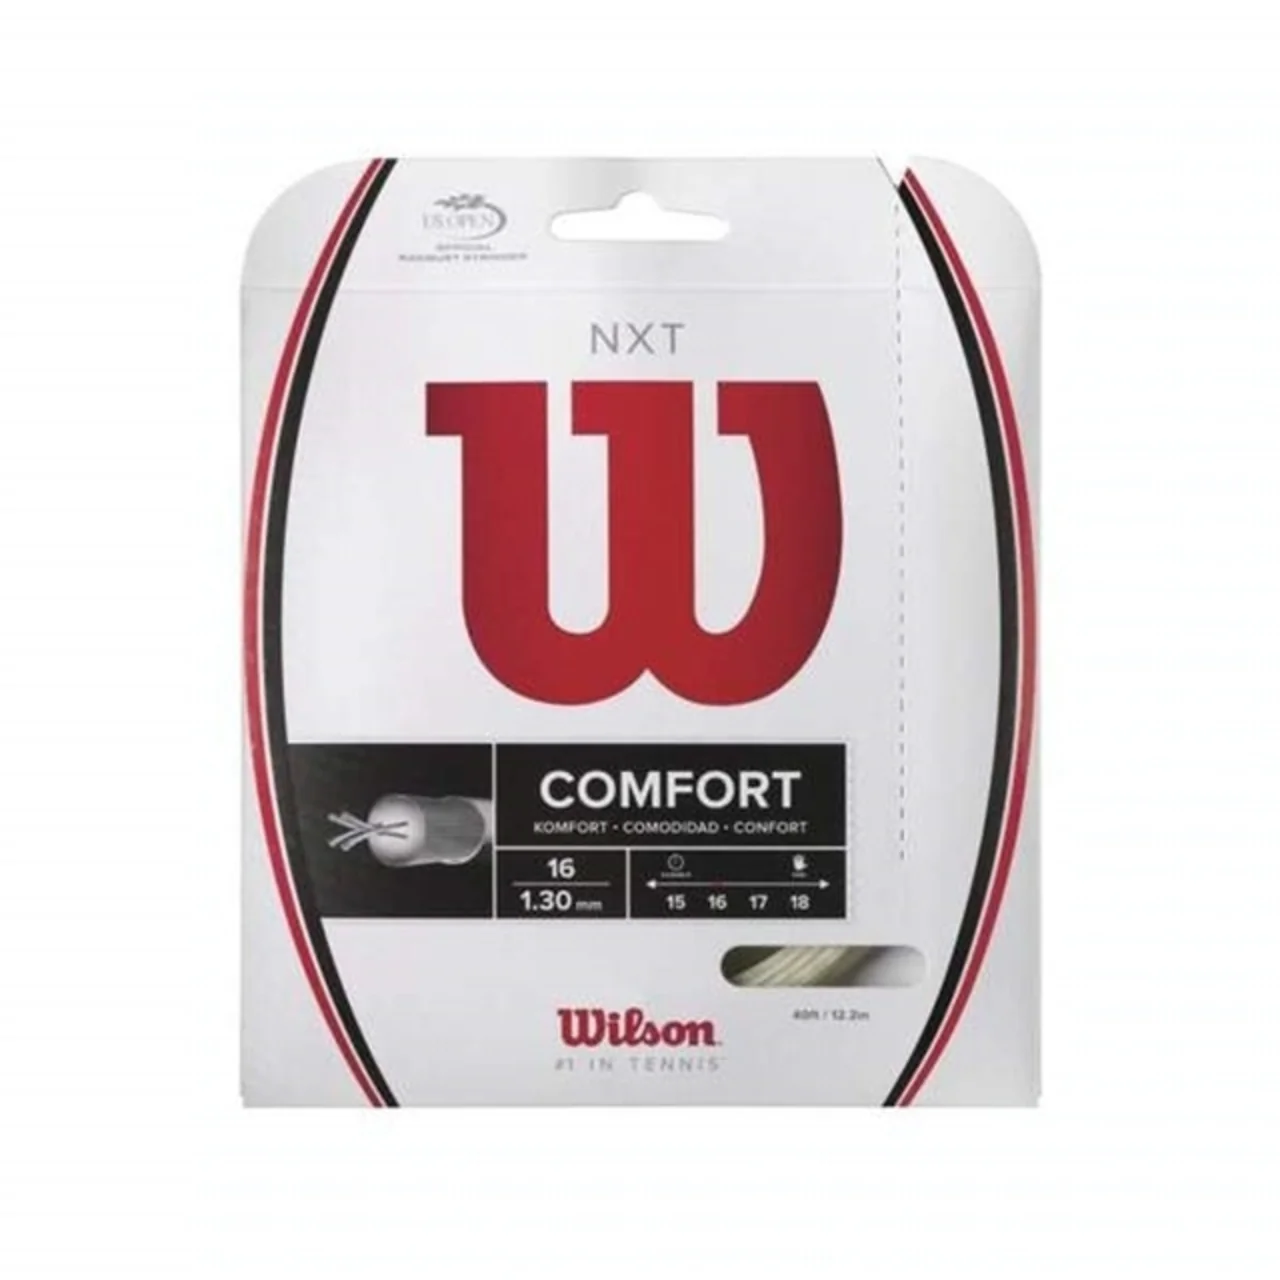 Wilson NXT Comfort Set